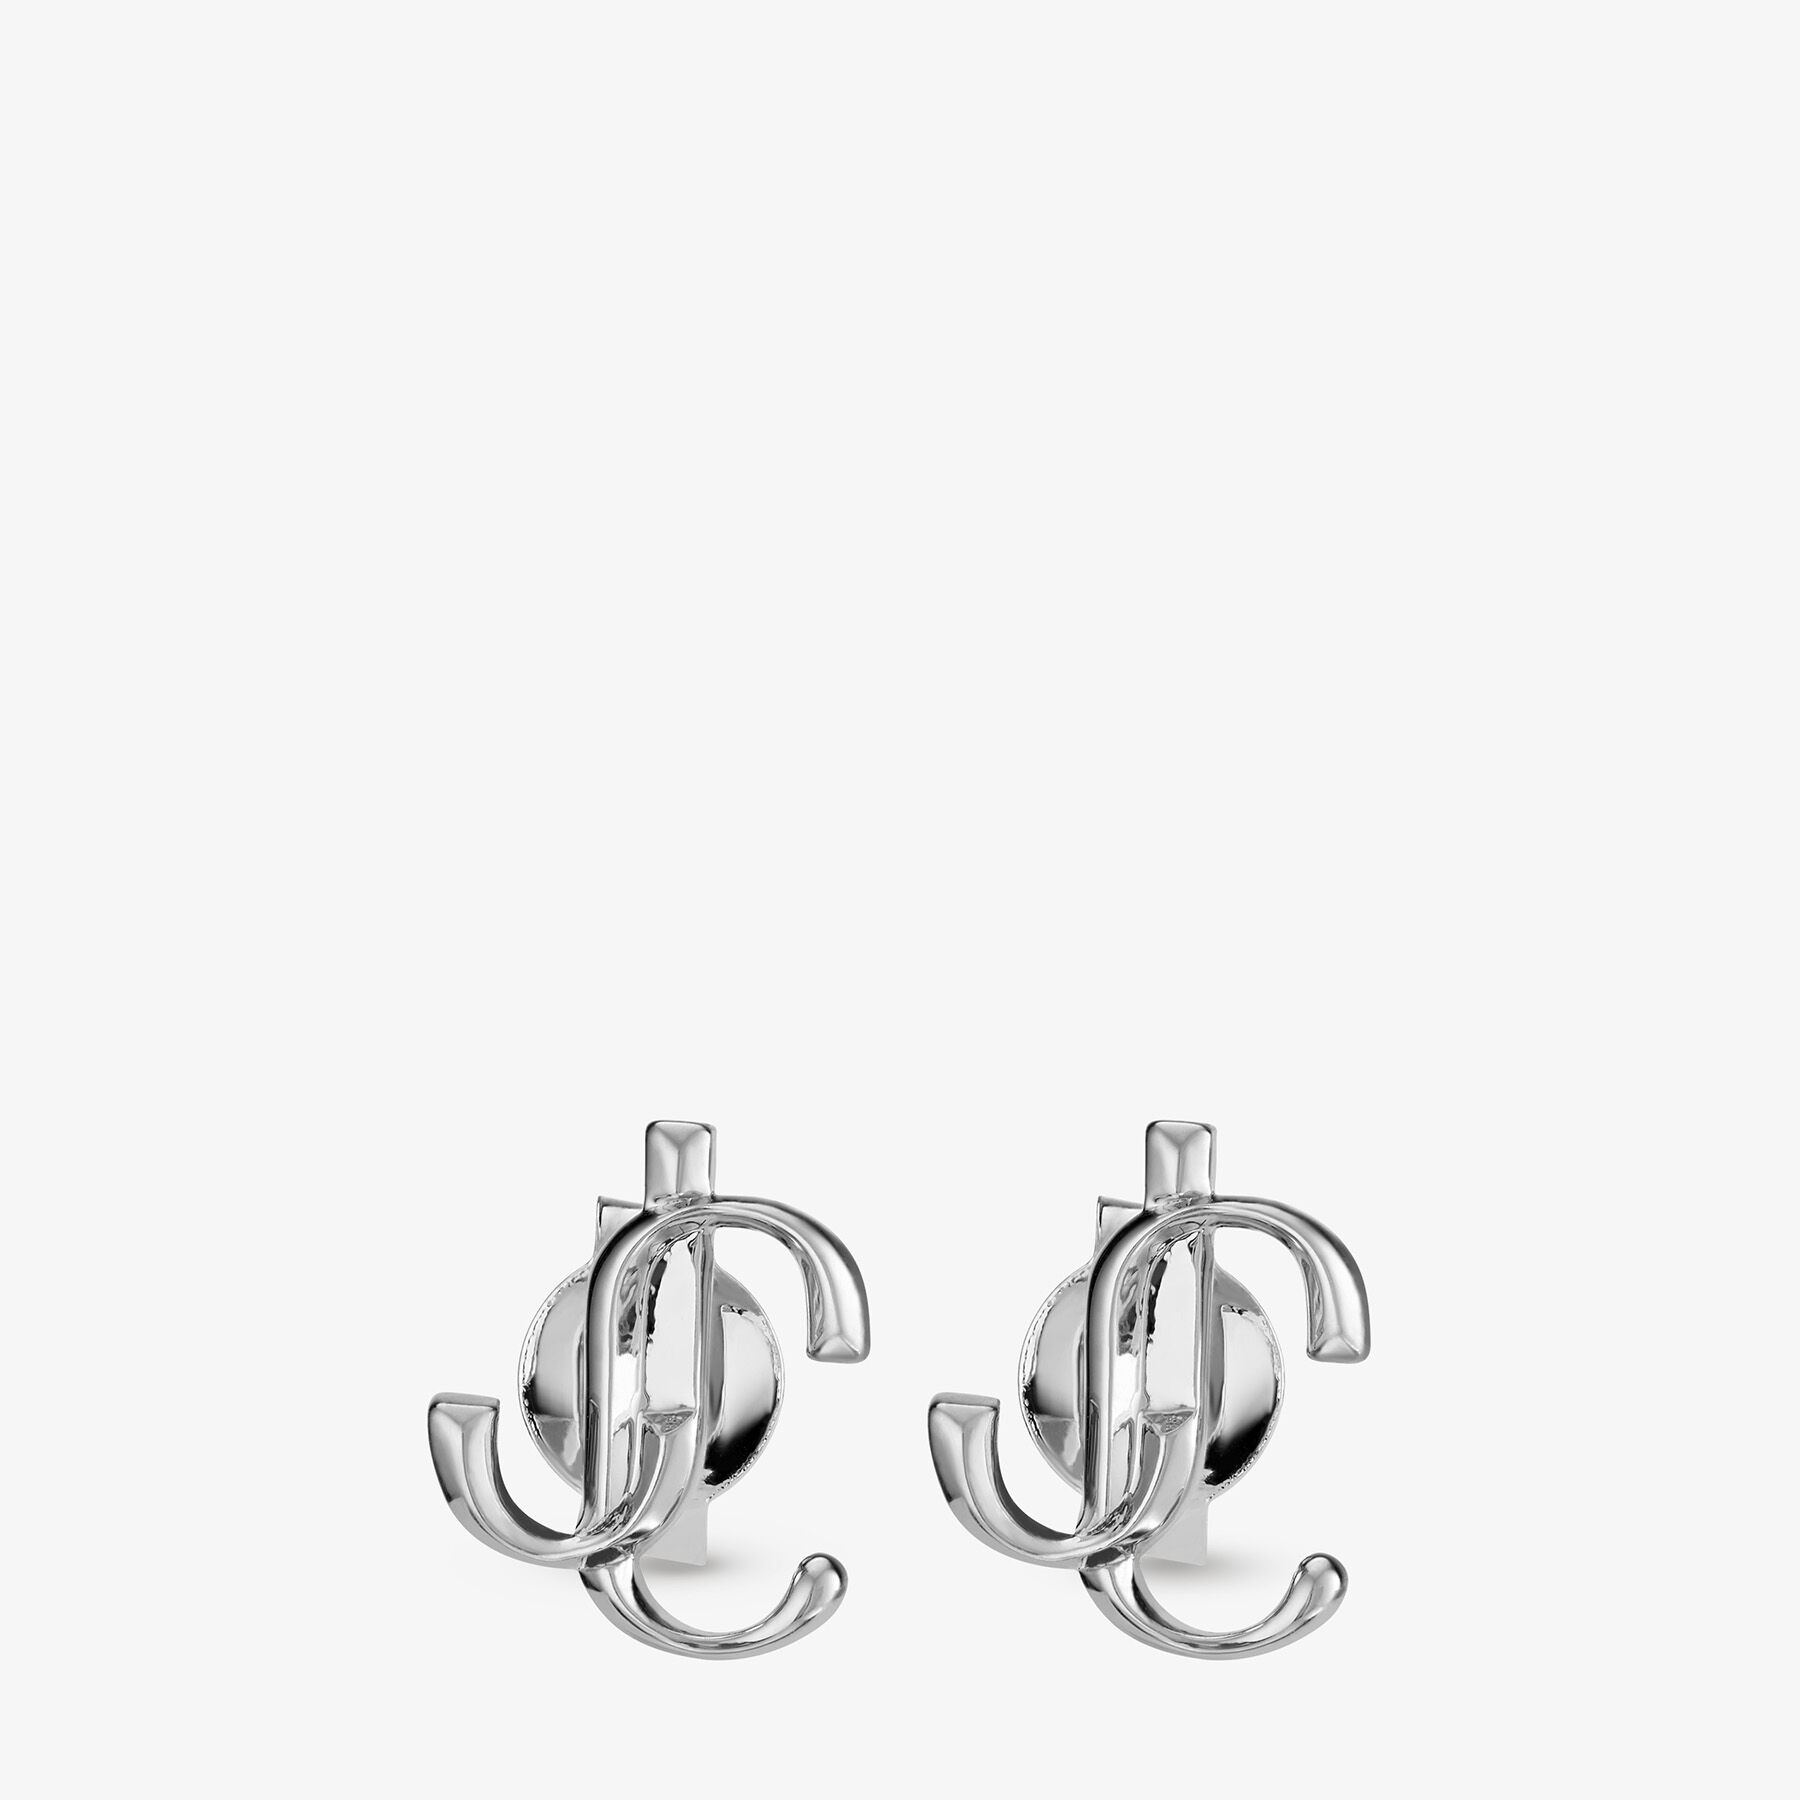 Silver-Finish Metal JC Mini Stud Earrings | JC Mini Studs